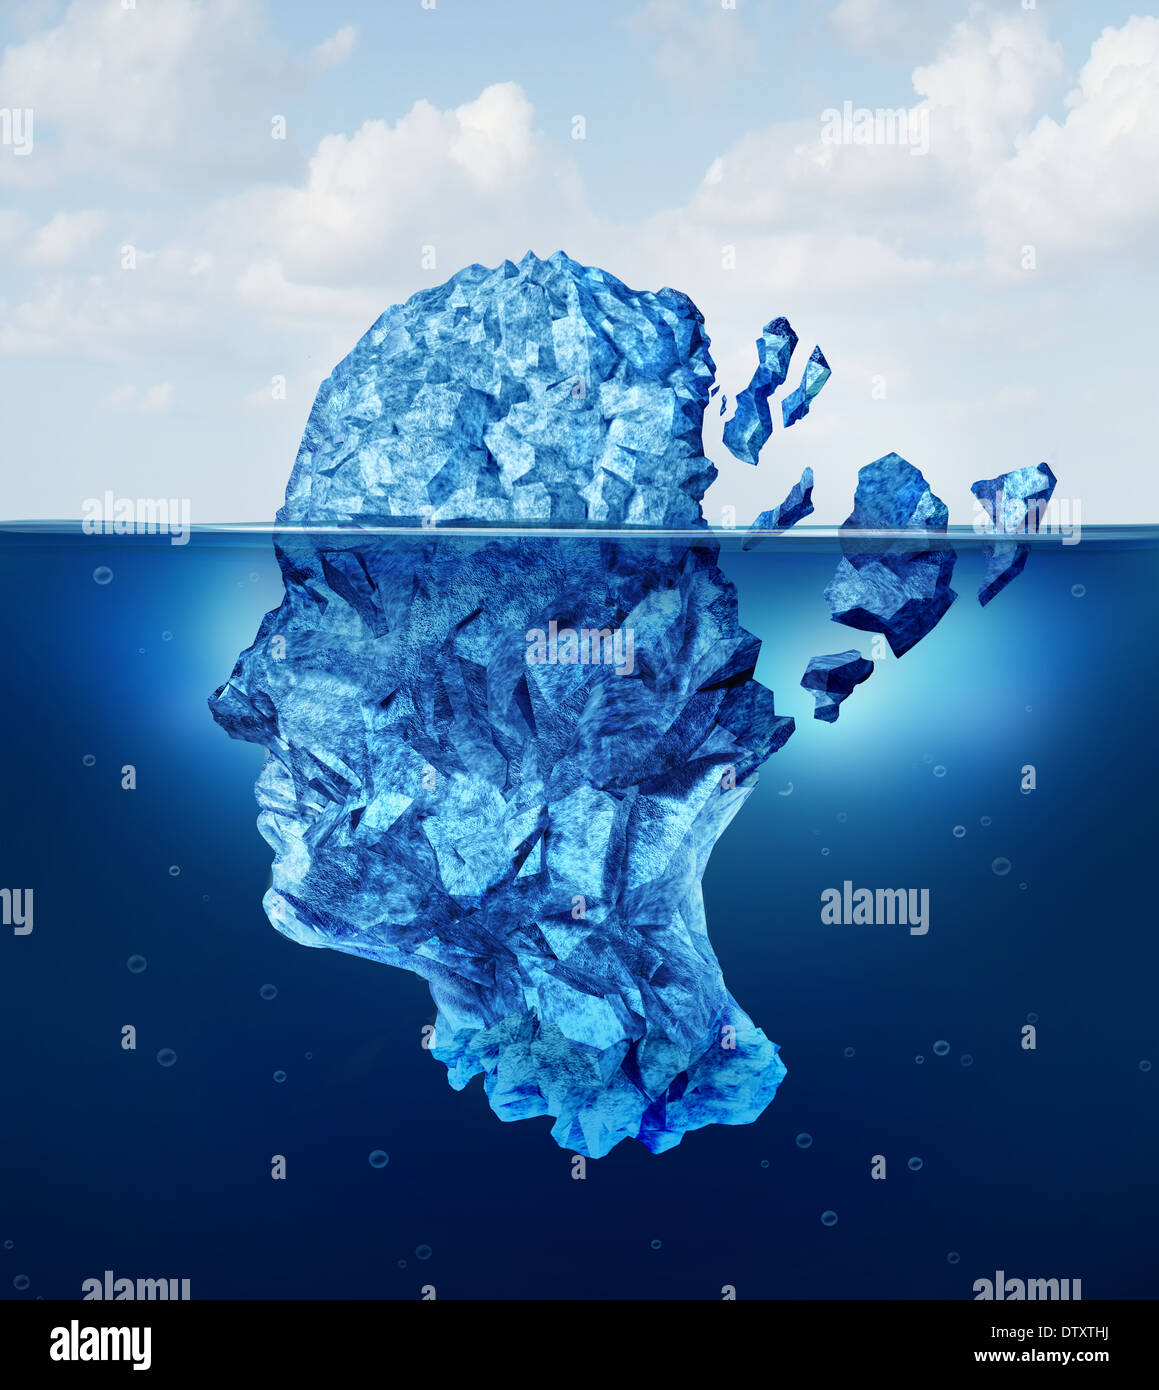 Traumatismes cérébraux et le vieillissement ou les dommages neurologiques concept comme un iceberg flottant dans un océan se briser comme une crise sanitaire metap Banque D'Images